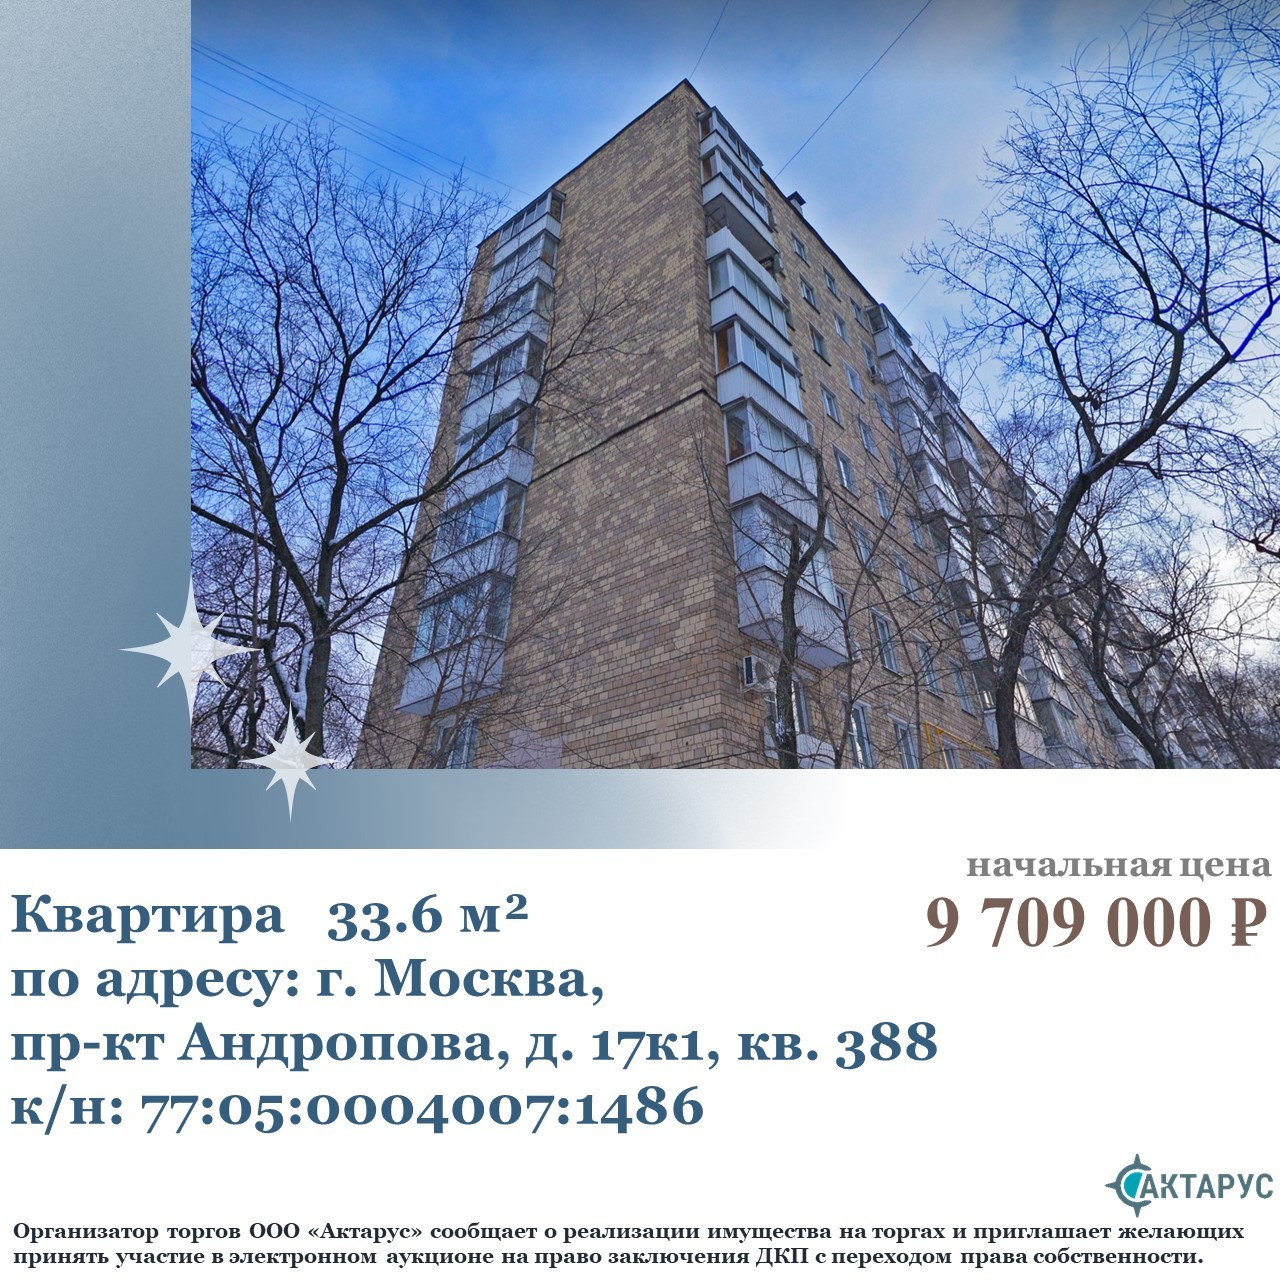 Квартира по адресу: г. Москва, пр-кт Андропова д. 17, корп. 1, кв. 388, к.н 77:05:0004007:1486, пл. 